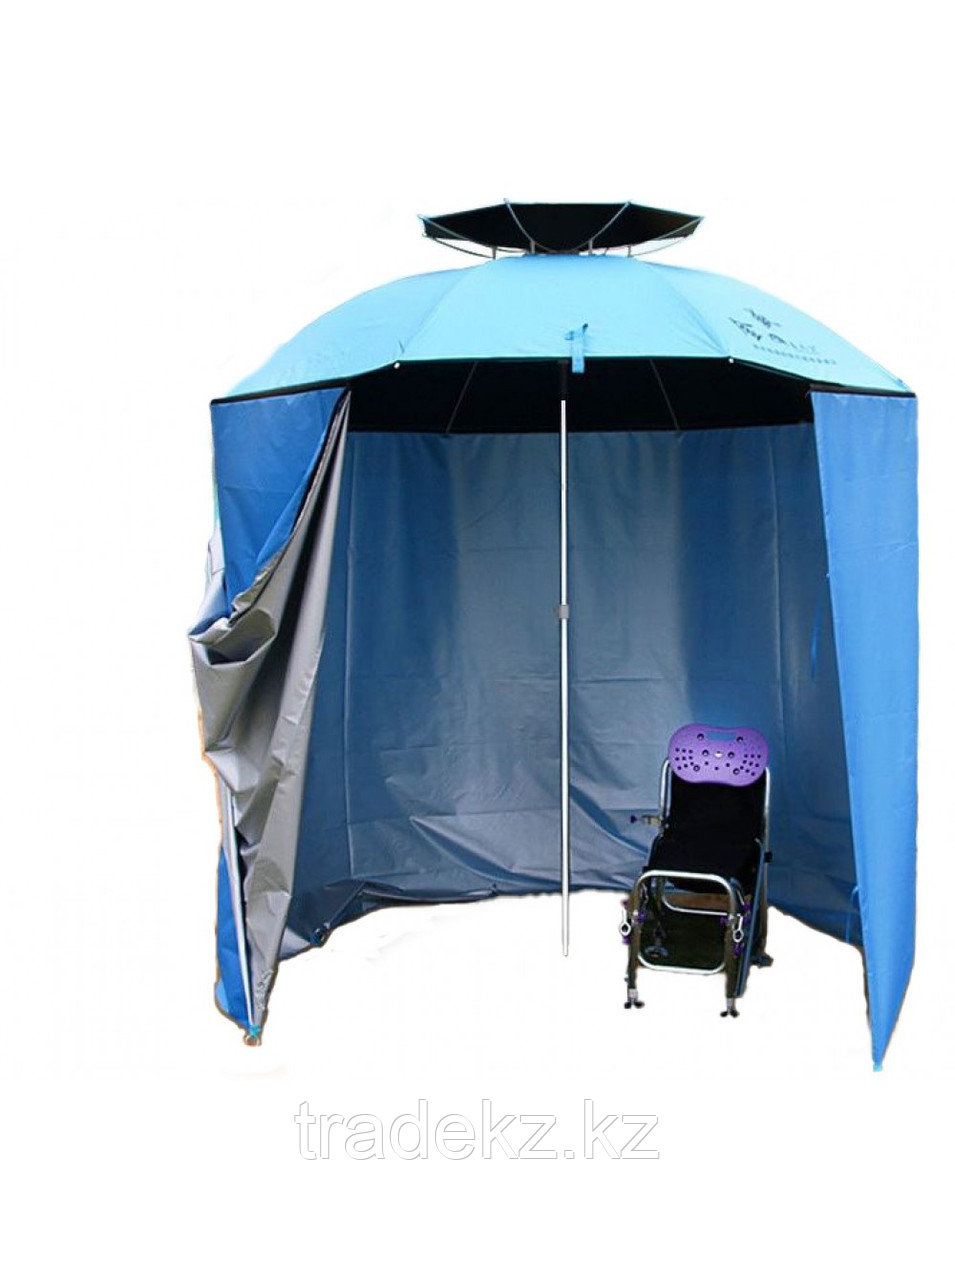 Зонт палатка с боковой стенкой HUSKY с наклоном, антиветровым клапаном, диаметер купола 220 см.